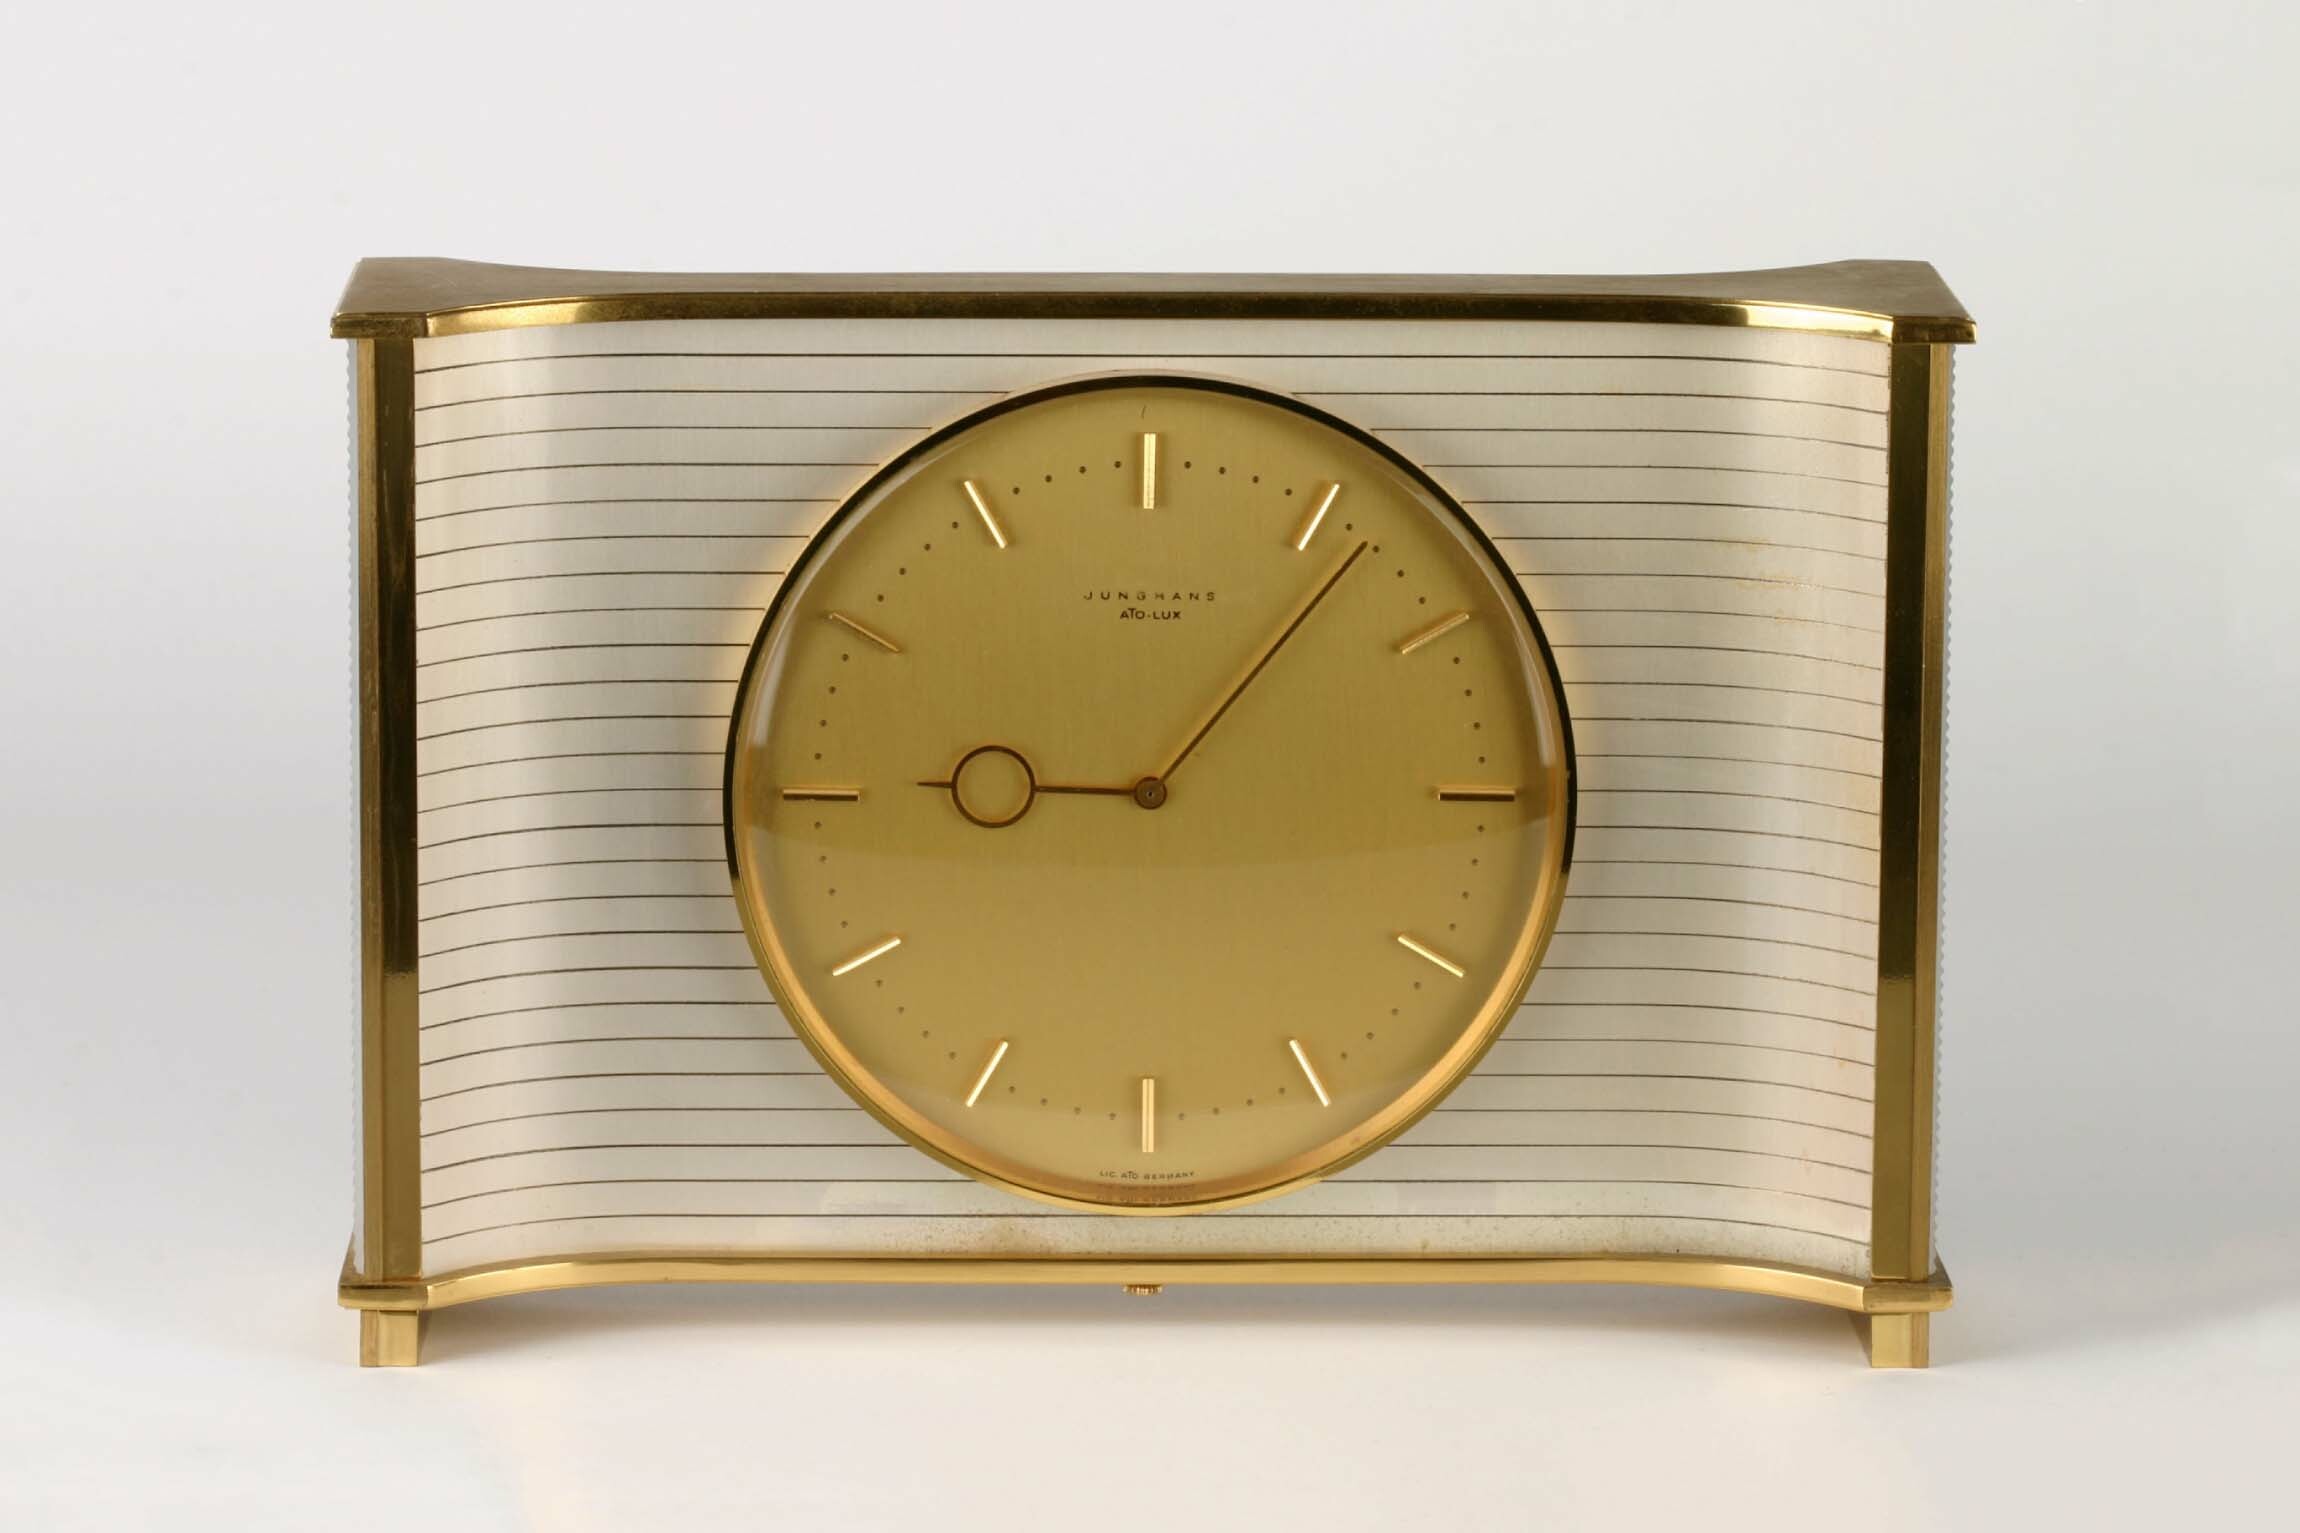 Tischuhr, Junghans, Schramberg, um 1965 (Deutsches Uhrenmuseum CC BY-SA)